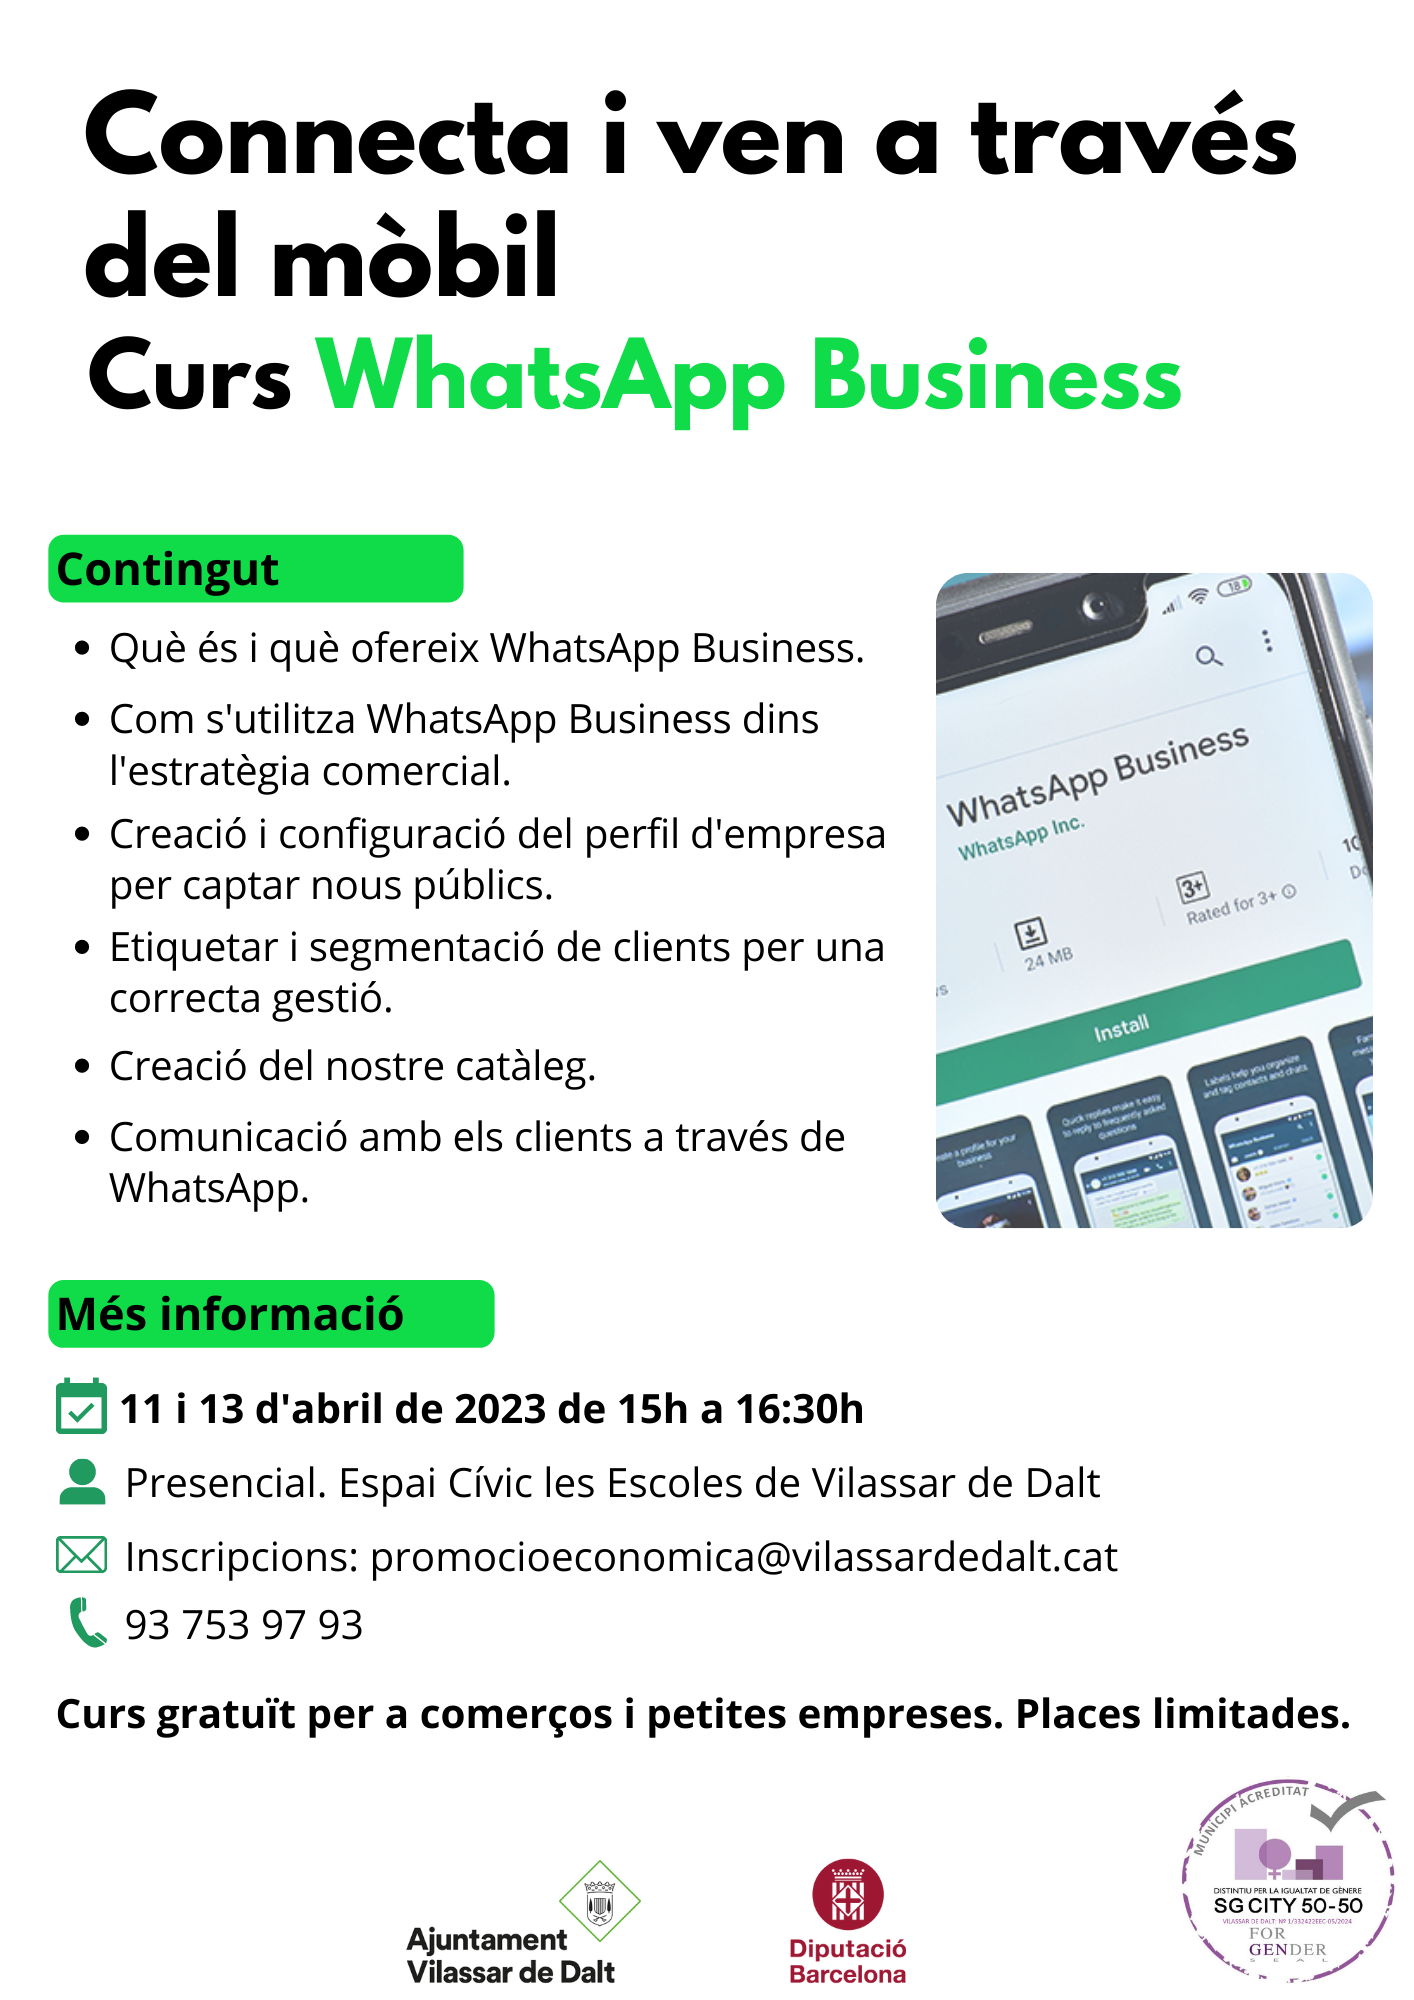 Curs de Whatsapp Business